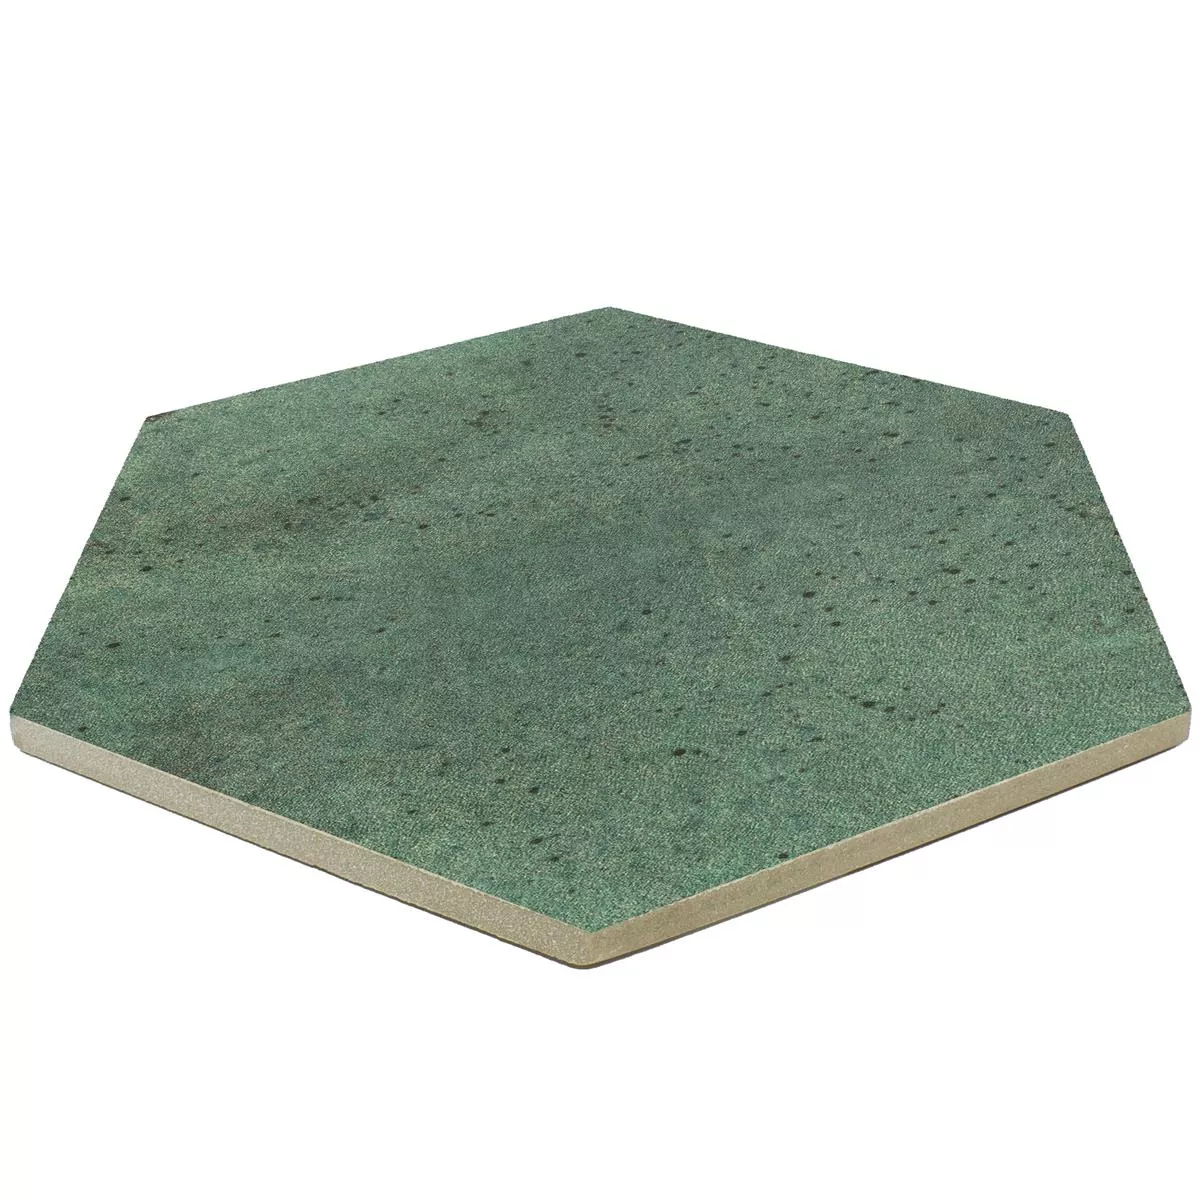 Échantillon Carrelage Sol Et Mur Arosa Mat Hexagone Vert Émeraude 17,3x15cm